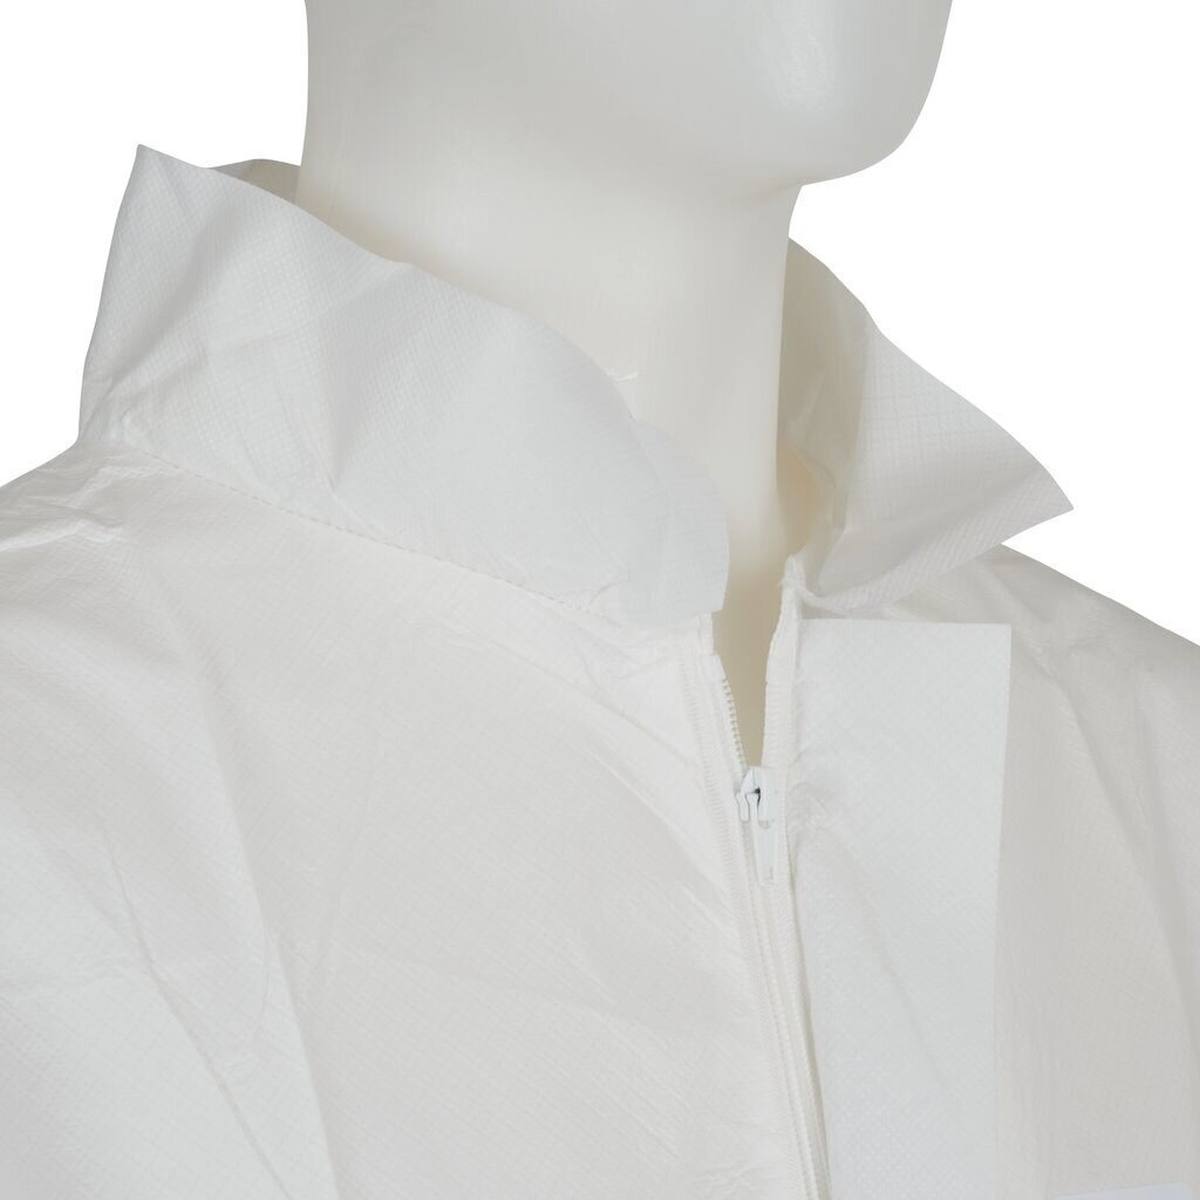 Manteau 3M 4440, blanc, taille M, particulièrement respirant, très léger, avec fermeture éclair, poignets tricotés